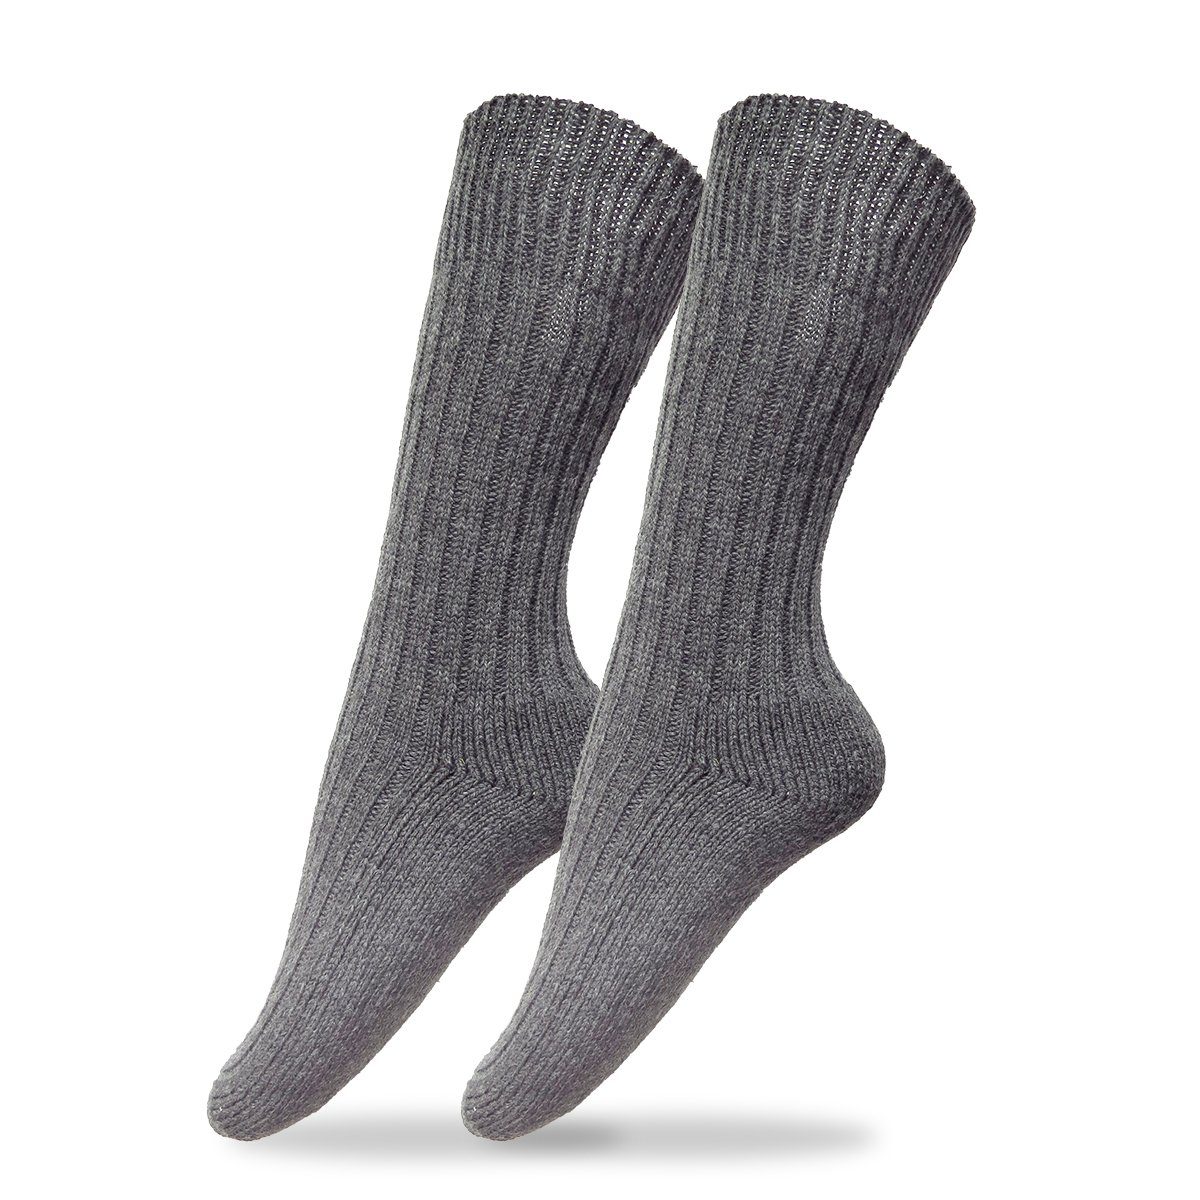 Sonia Originelli Norwegersocken 3 Socken strapazierfähig unisex Paar khaki Strümpfe Army 3er-Set weich super